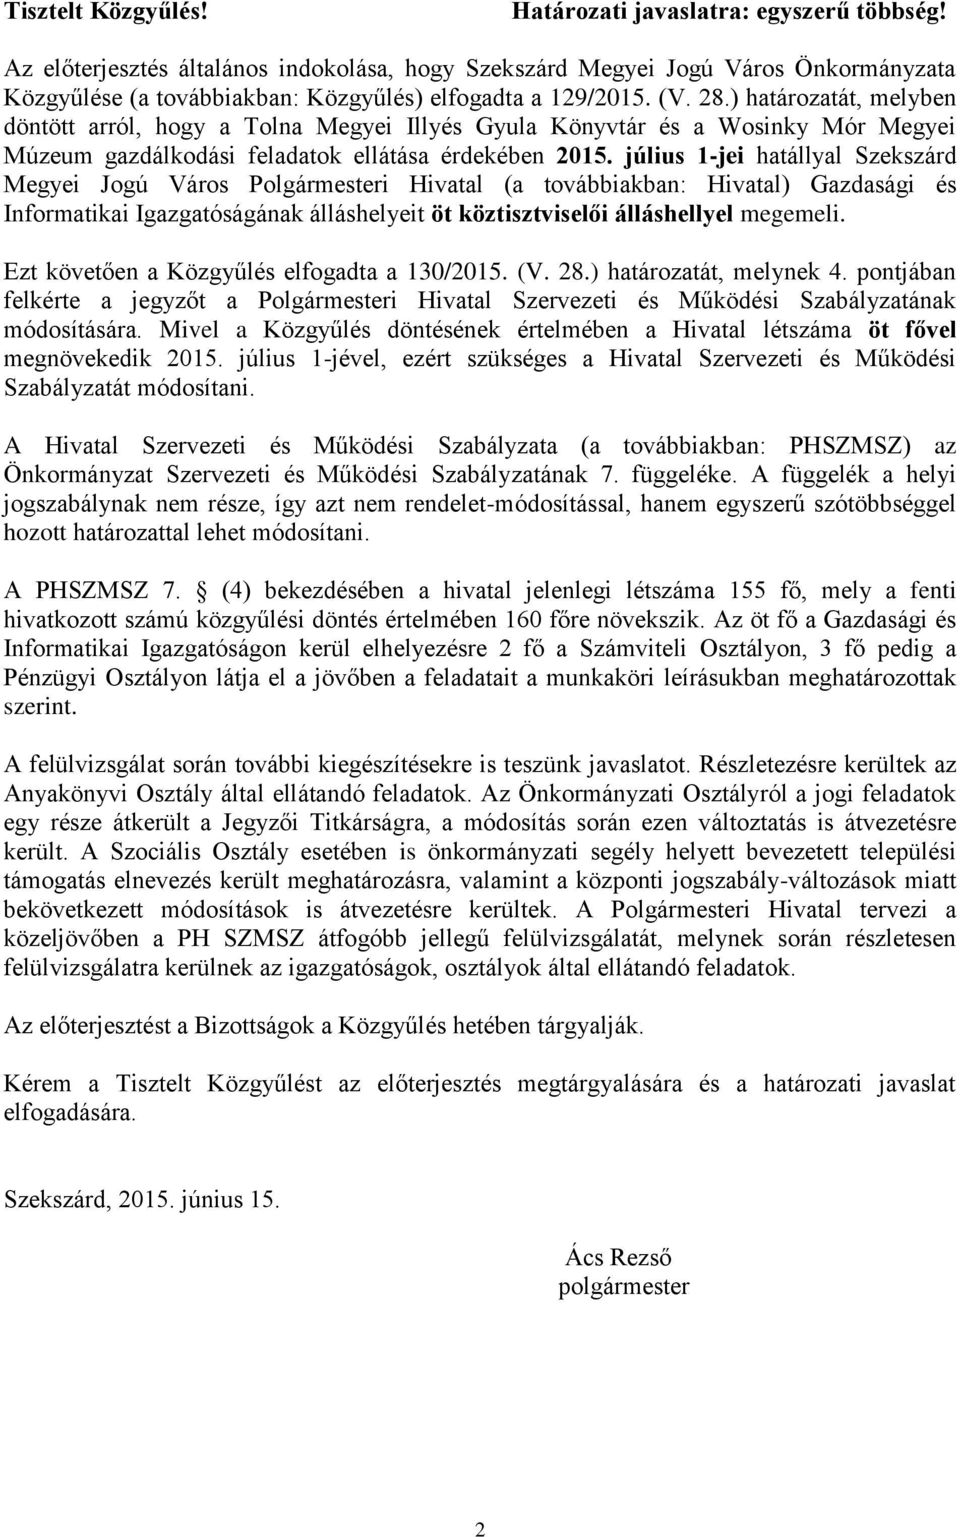 ) határozatát, melyben döntött arról, hogy a Tolna Megyei Illyés Gyula Könyvtár és a Wosinky Mór Megyei Múzeum gazdálkodási feladatok ellátása érdekében 2015.